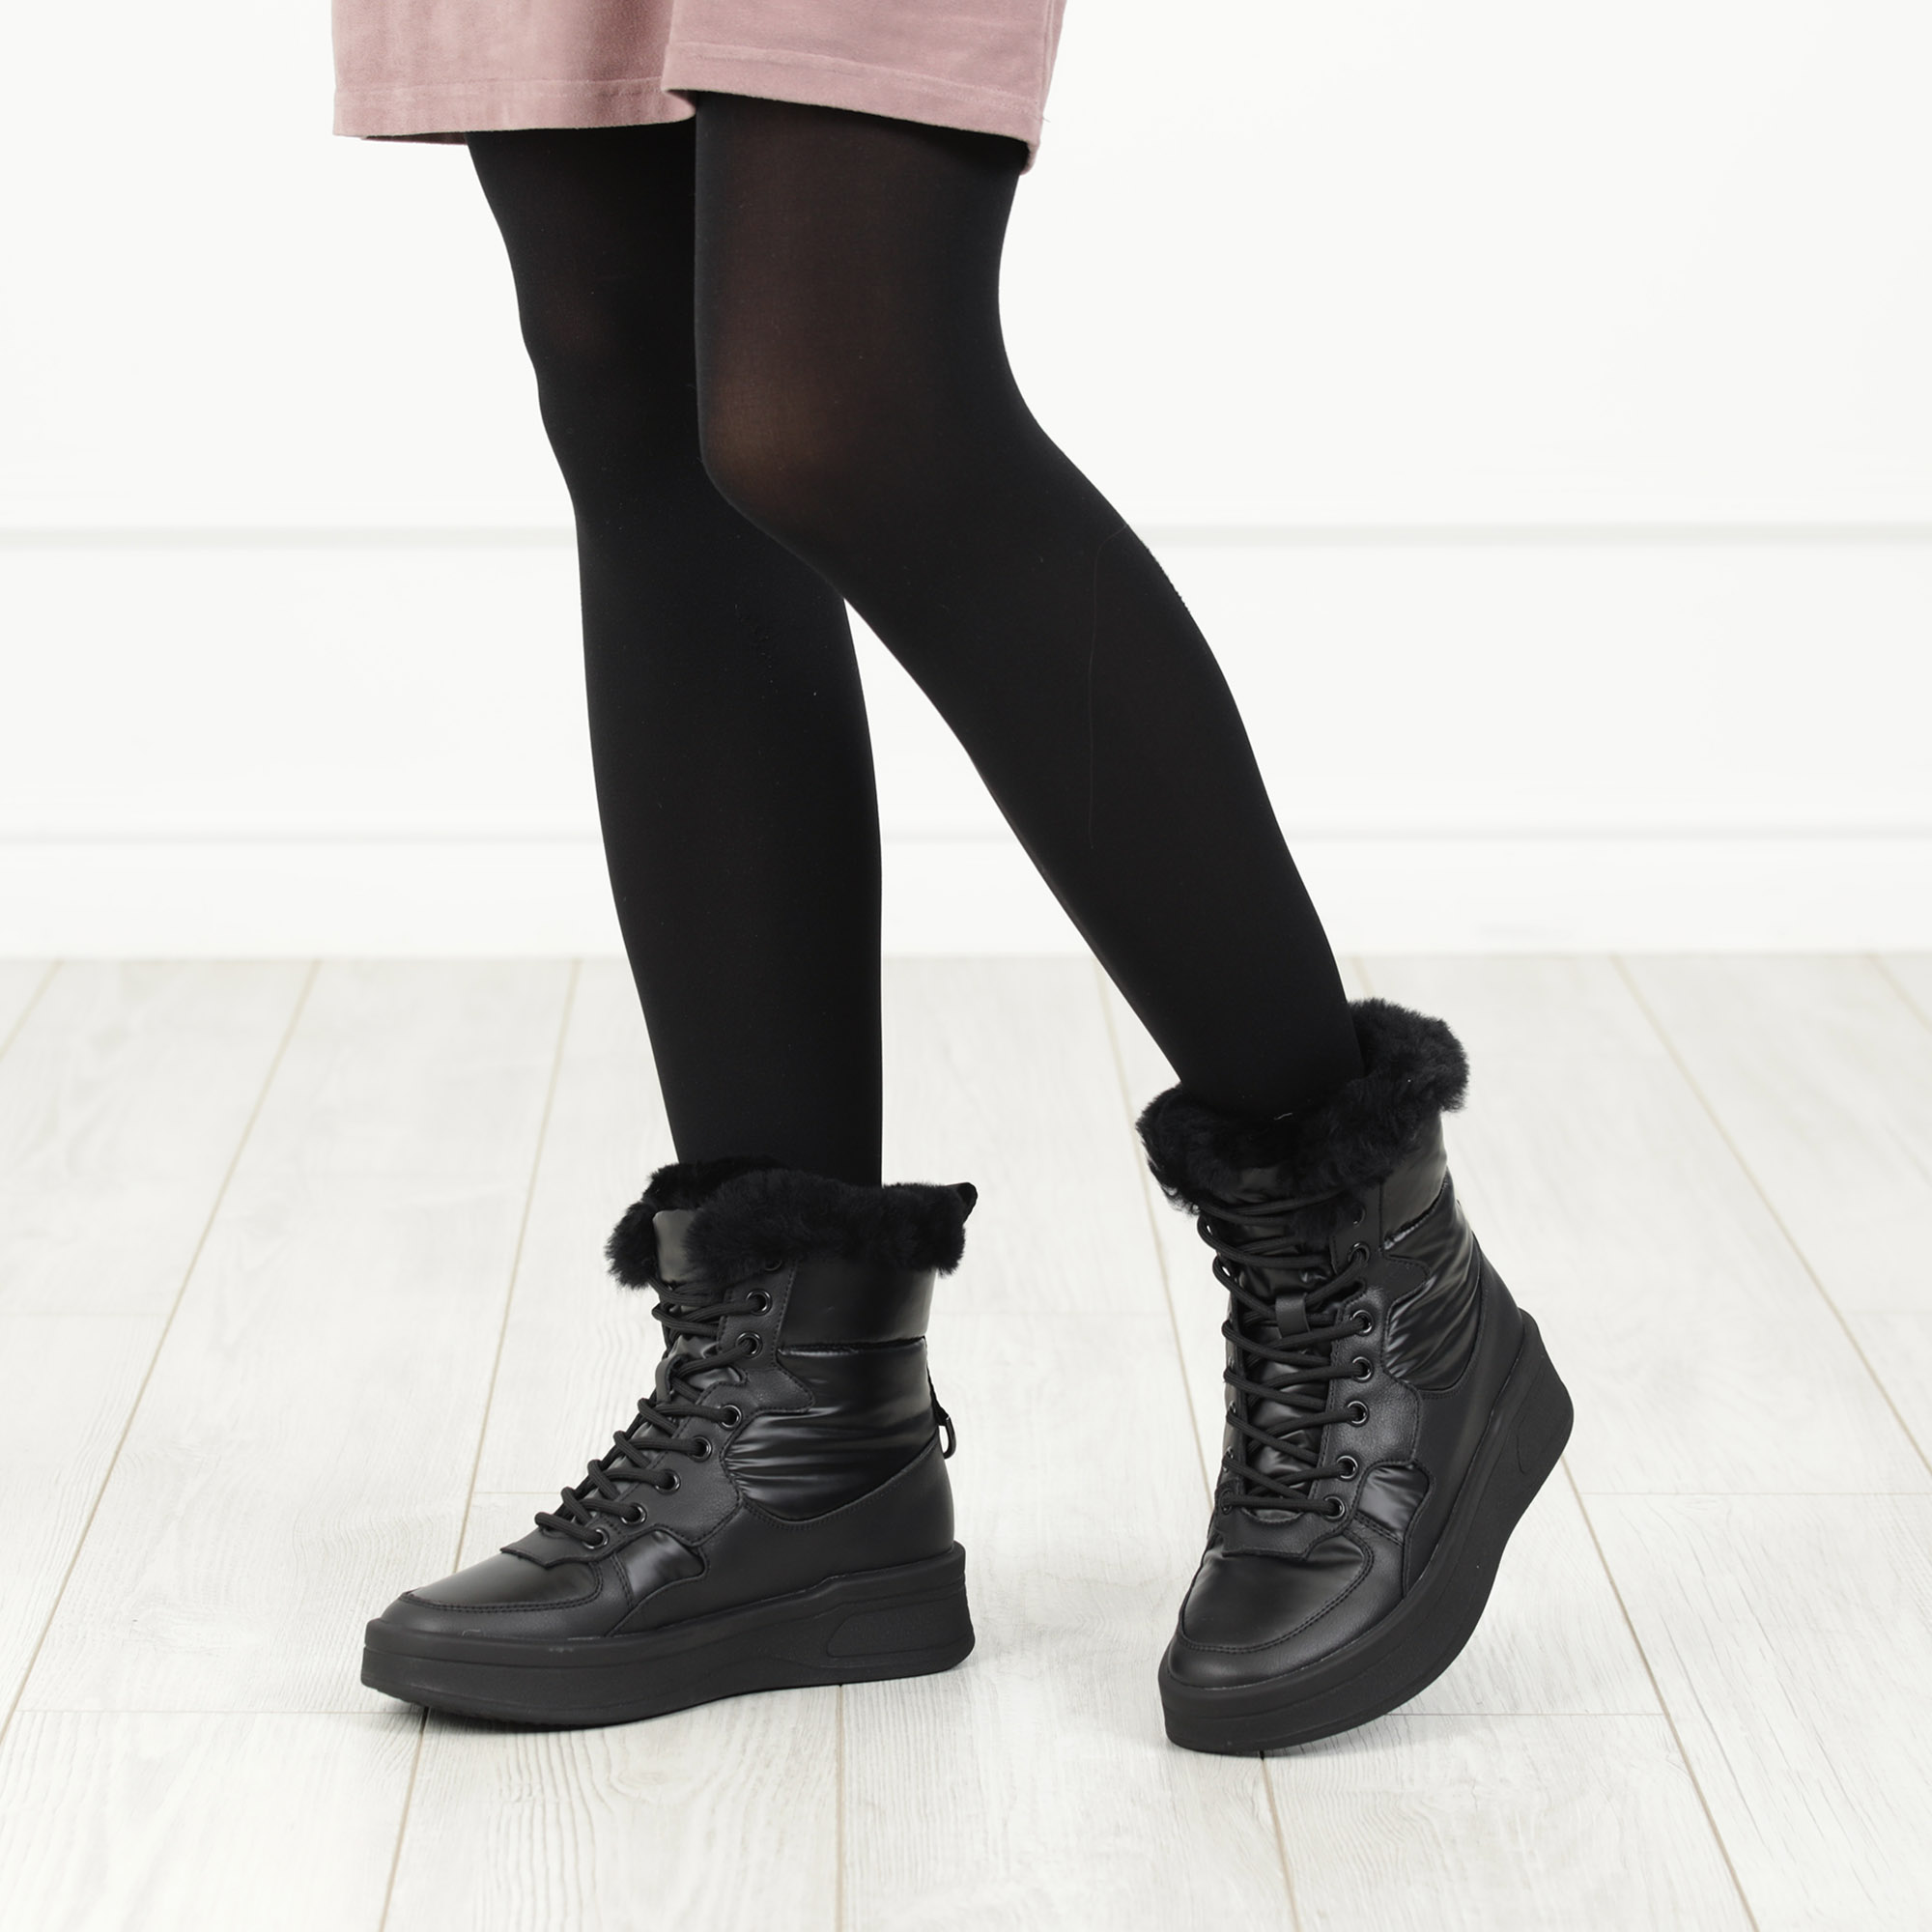 Черные высокие кроссовки из комбинированных материалов смеховой опушкой на подкладке из натуральной шерсти на утолщенной платформе Respect, размер 38, цвет черный - фото 2